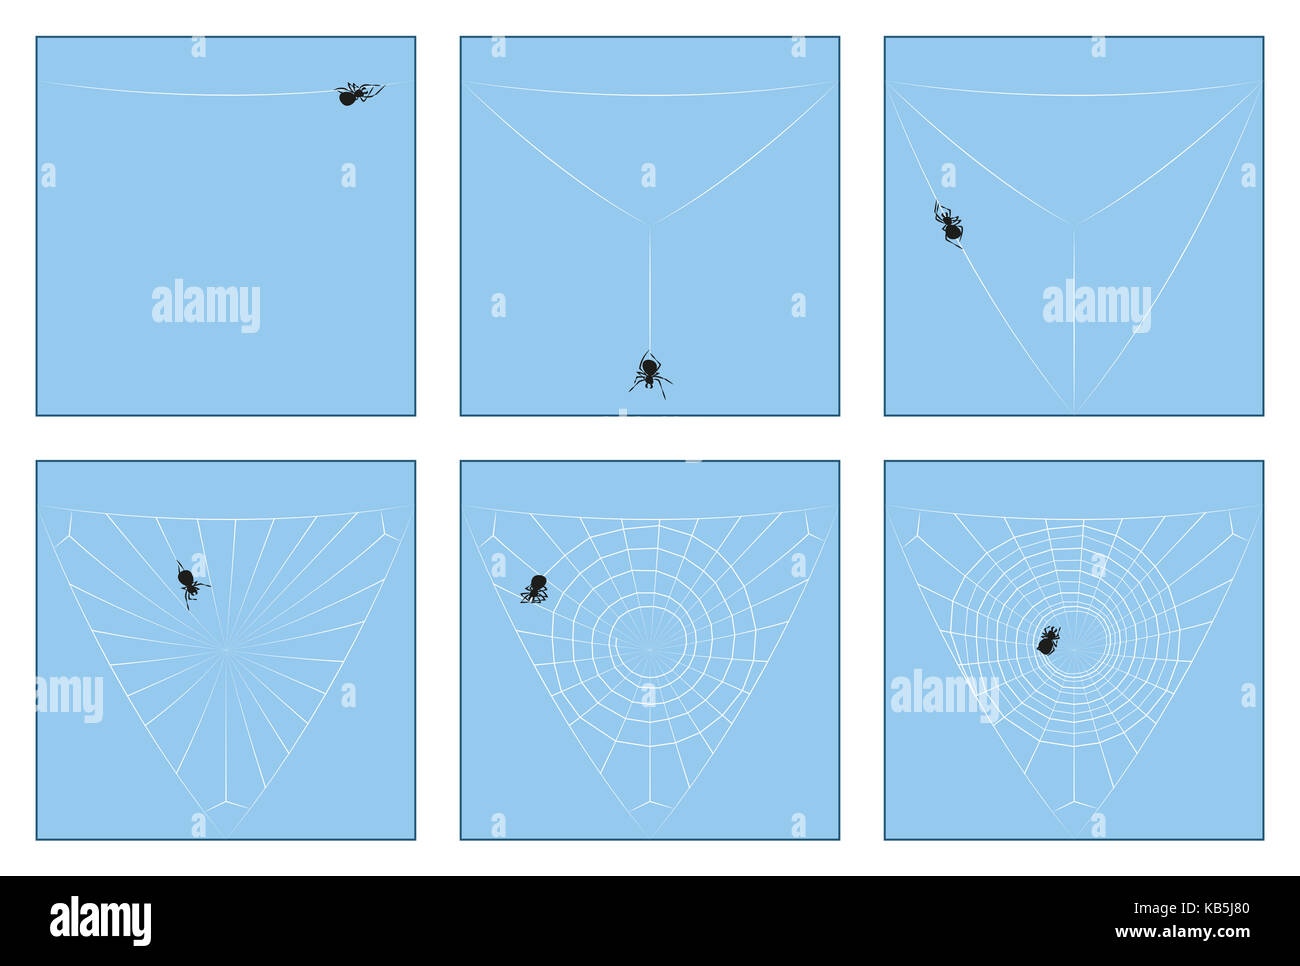 Spider Web - Costruzione manuale in sei tappe dal primo thread di filatura per la completa orb web, illustrato passo dopo passo. Foto Stock